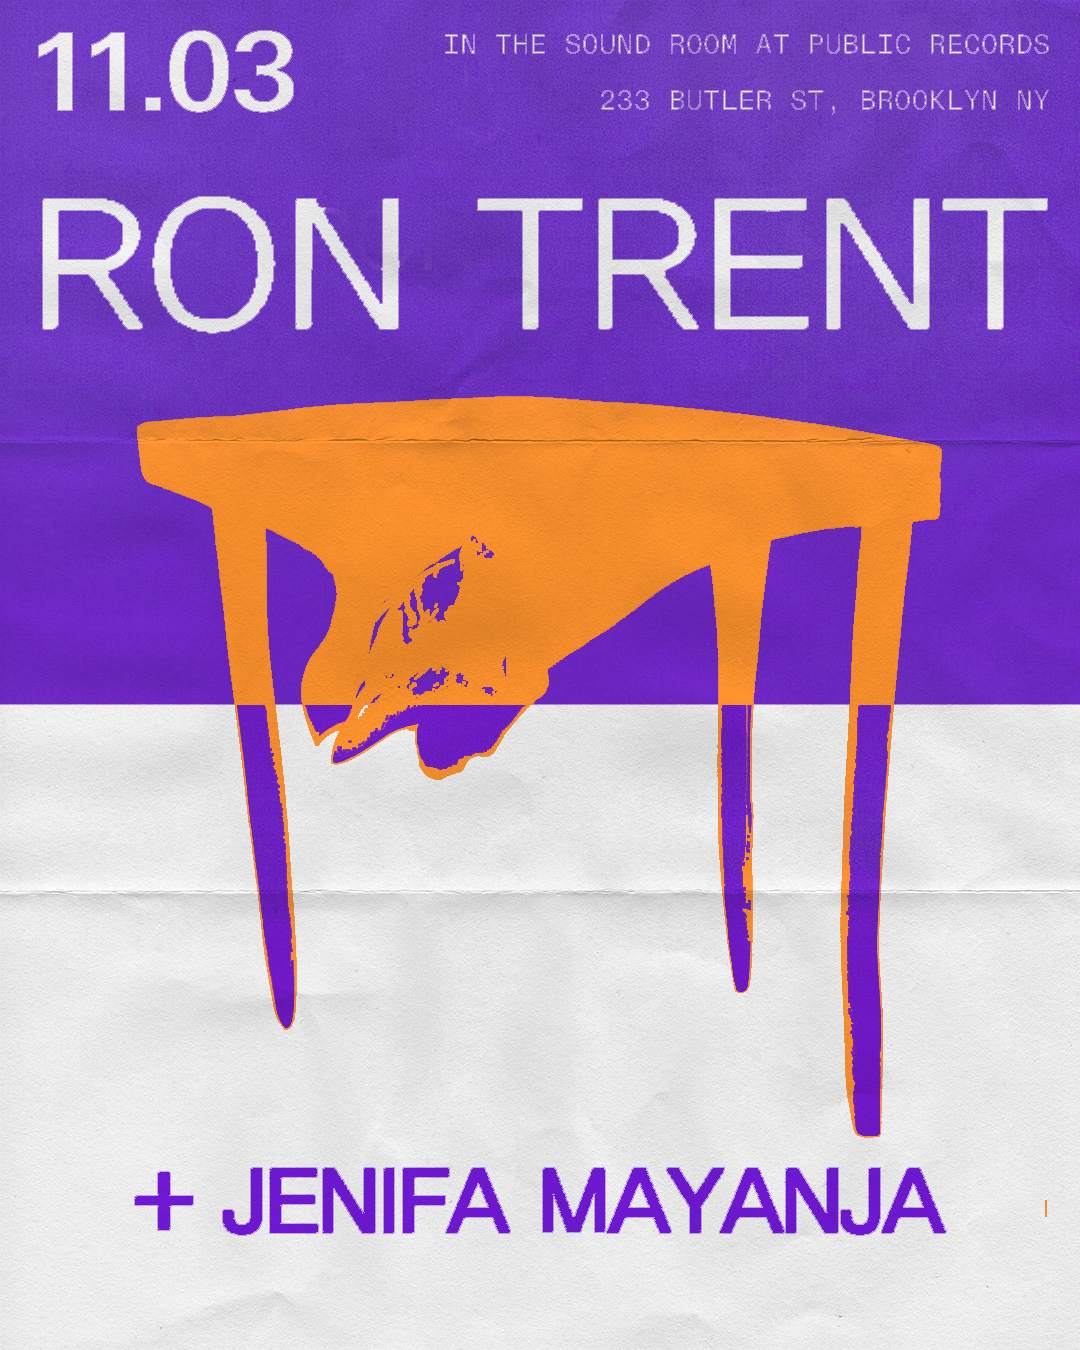 Ron Trent + Jenifa Mayanja - Página frontal